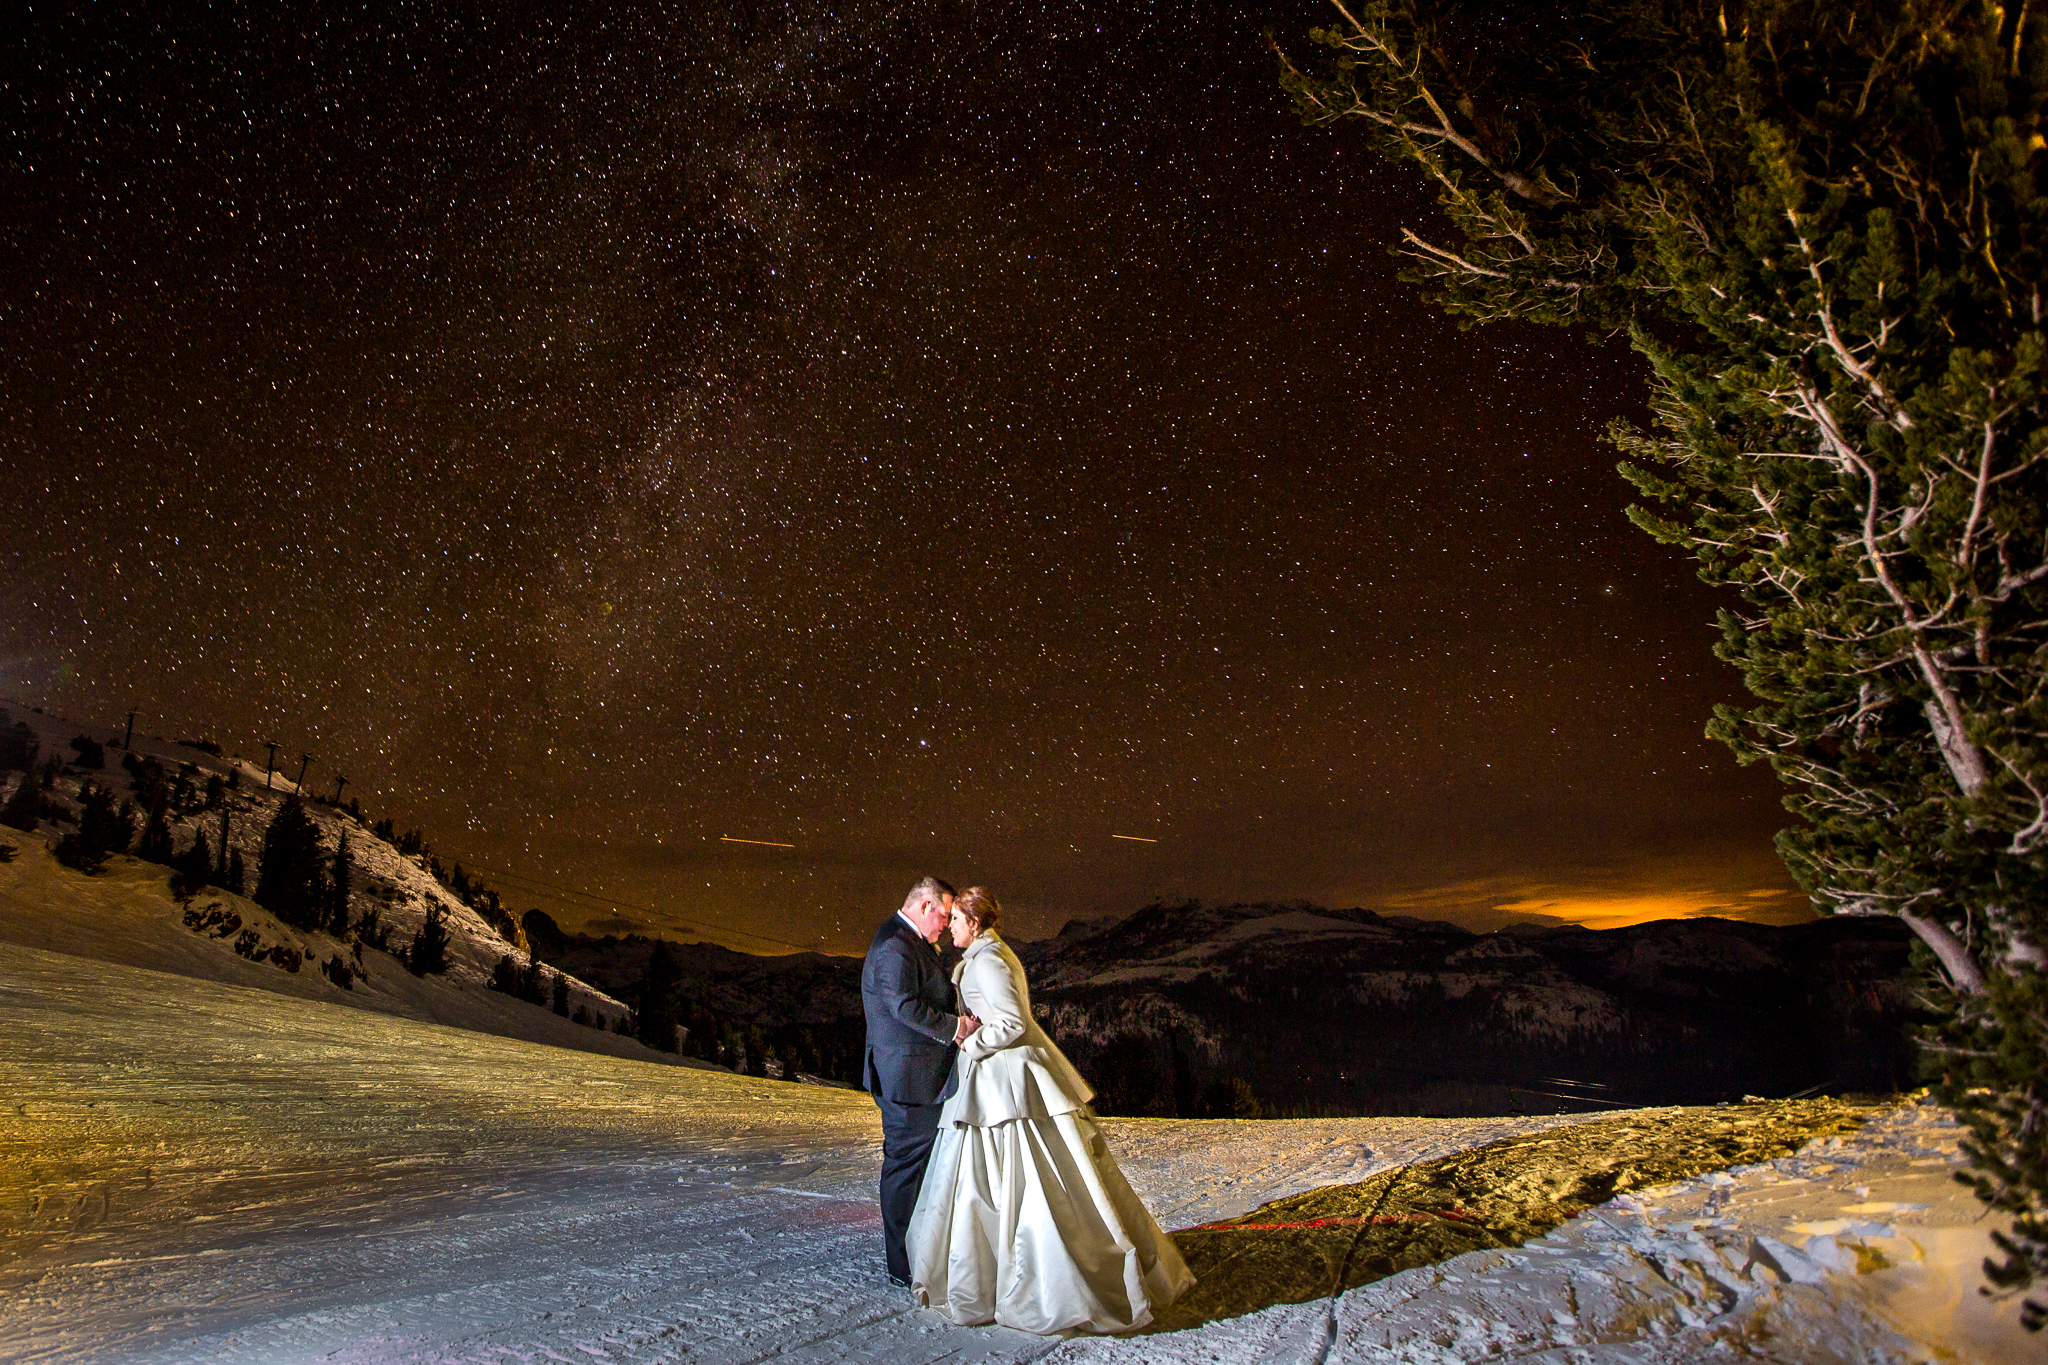 캐서린과 그녀의 남편은 2015년 12월 결혼식 중 캘리포니아주 맘모스 레이크스(Mammoth Lakes)에 있었다. 